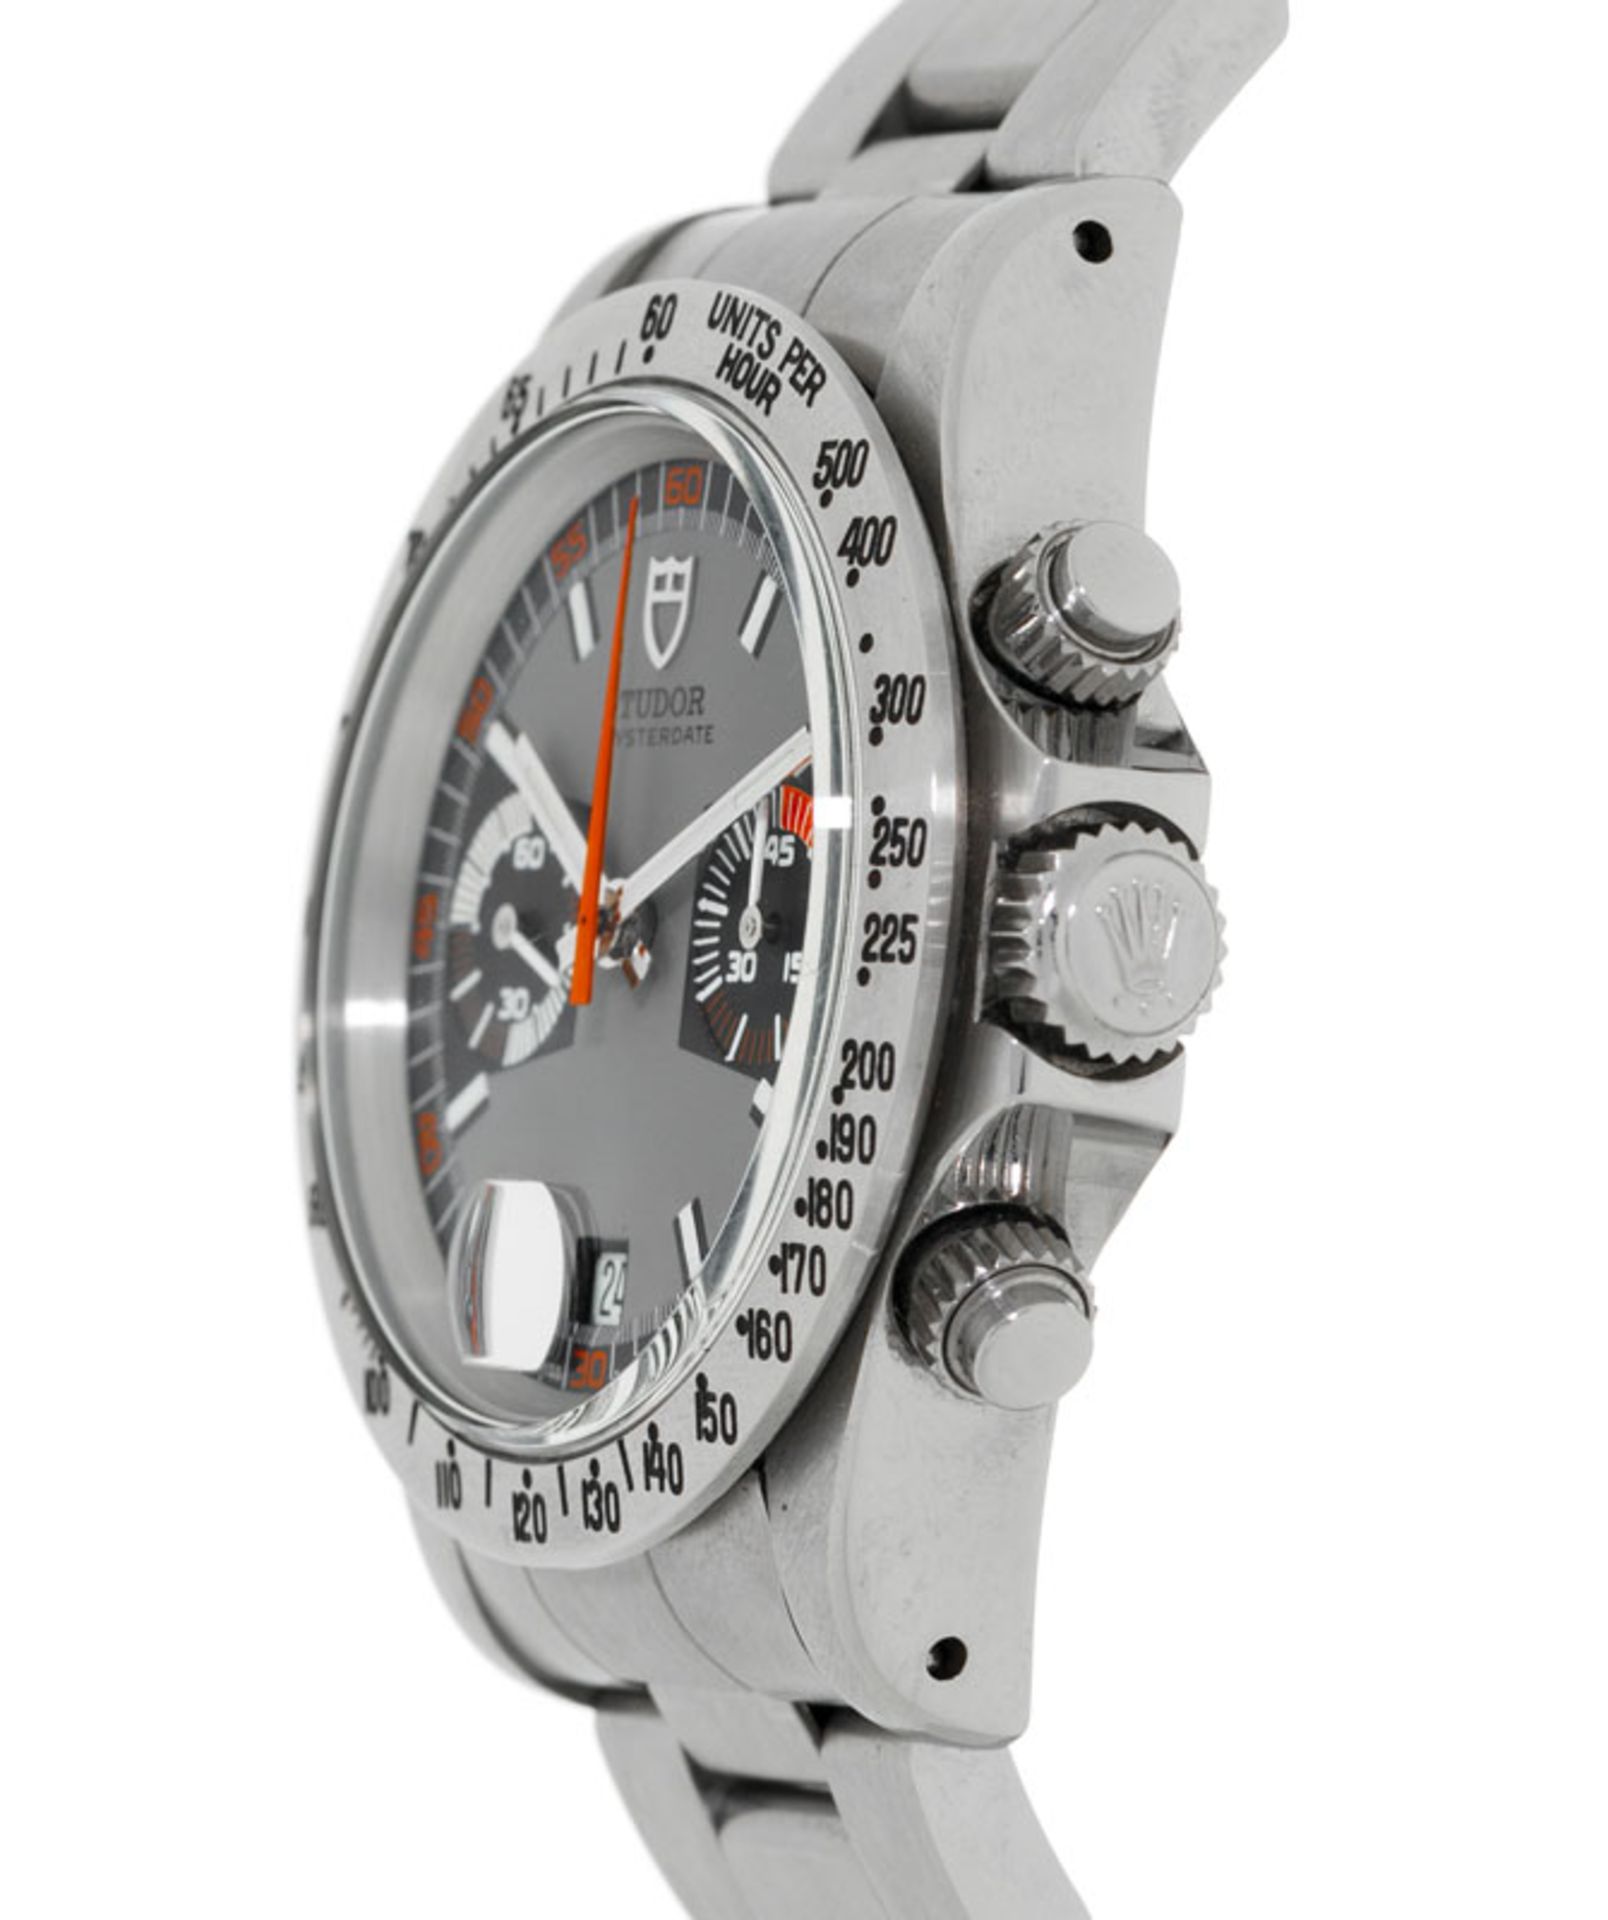 Tudor, Monte Carlo, réf. 7159/0, montre-bracelet chronographe en acier, années 1970, écrinTu - Image 2 of 5